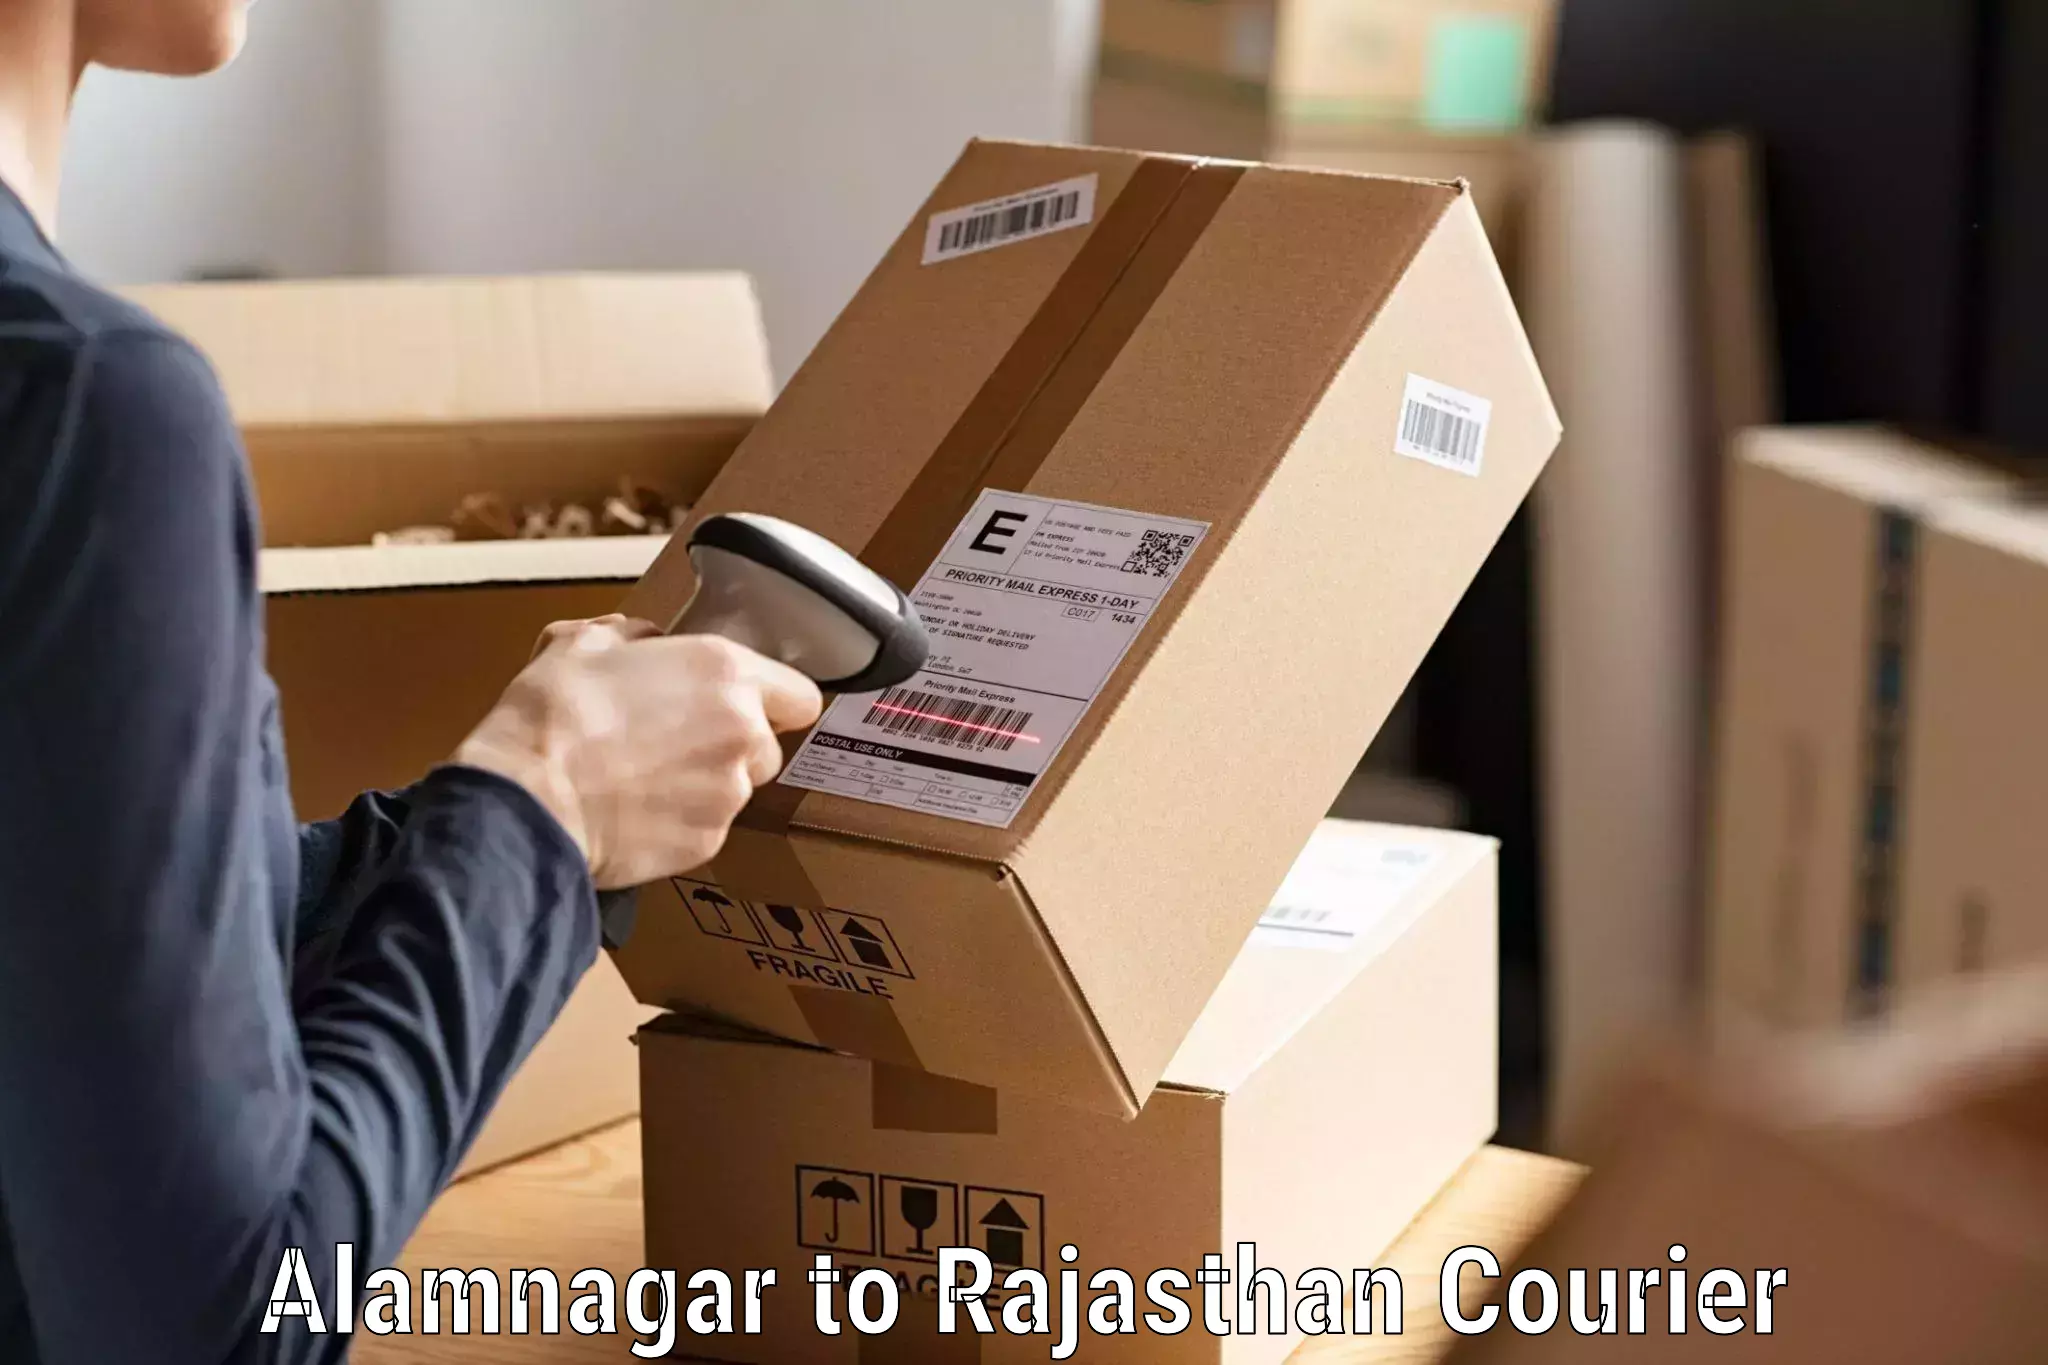 Cargo delivery service Alamnagar to Bandikui